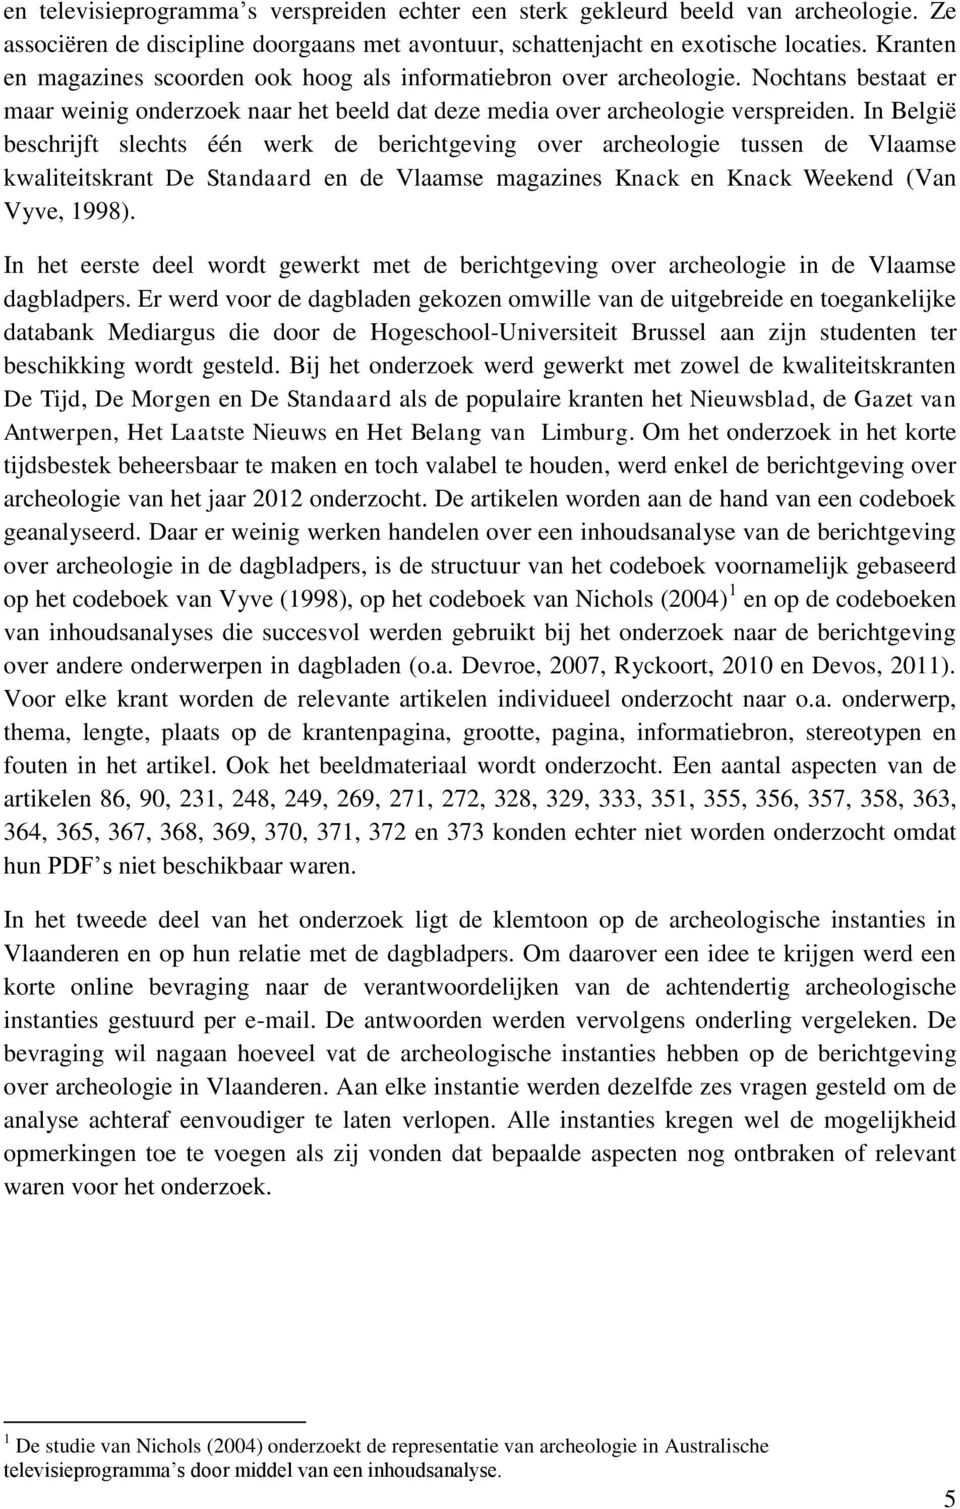 In België beschrijft slechts één werk de berichtgeving over archeologie tussen de Vlaamse kwaliteitskrant De Standaard en de Vlaamse magazines Knack en Knack Weekend (Van Vyve, 1998).